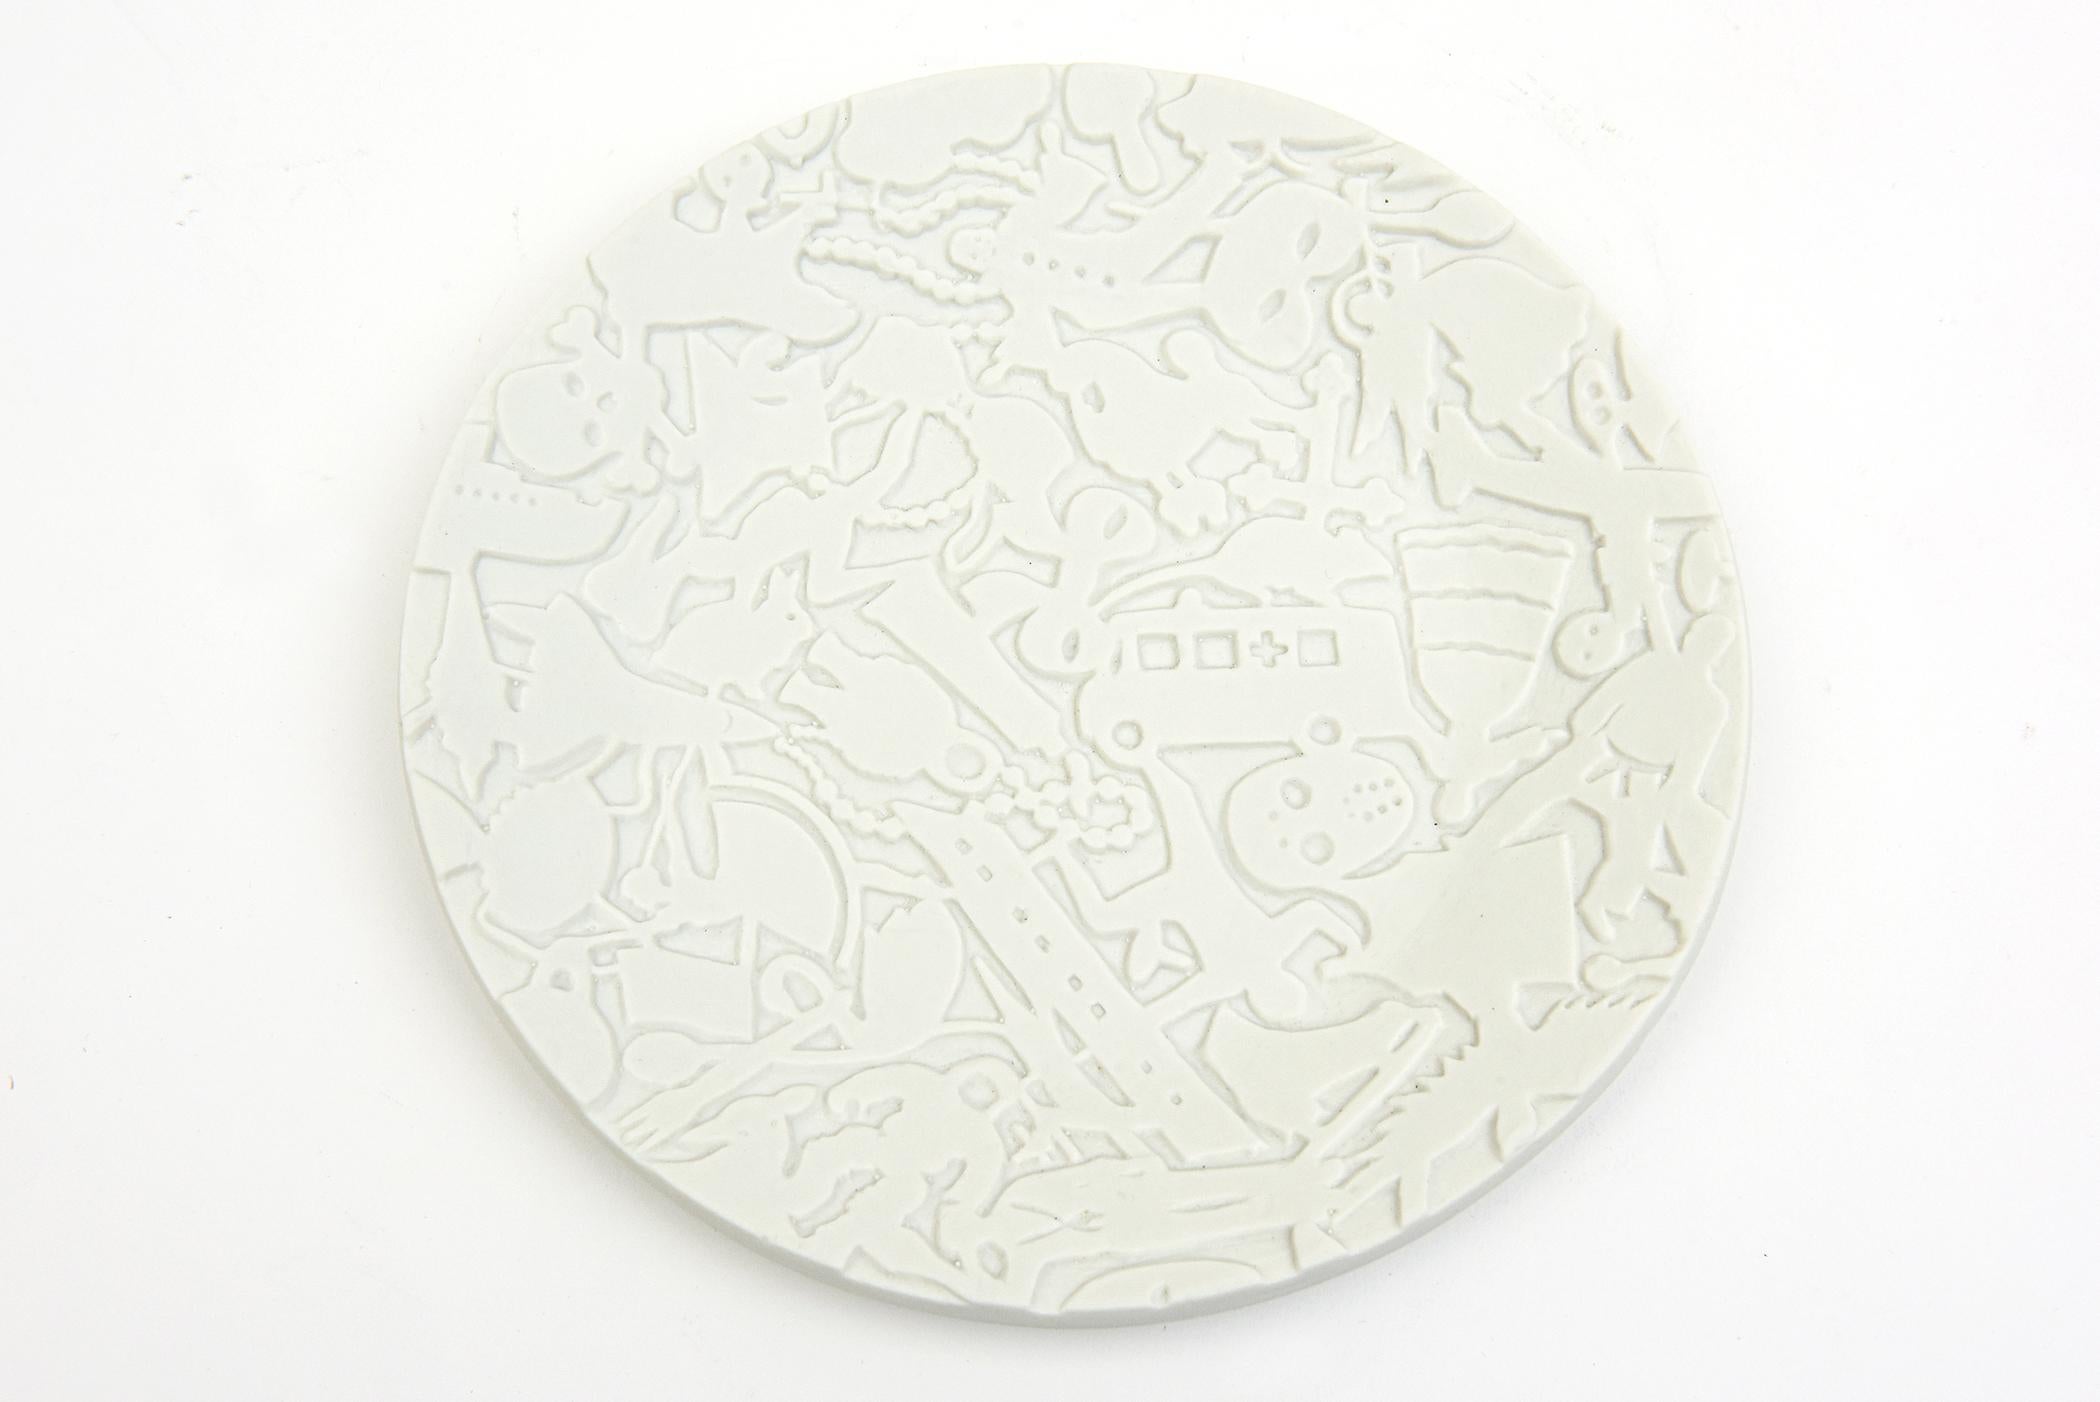 Studio Job for Makkum Pottery Textural Relief White Matt Porcelain Plate For Sale 3